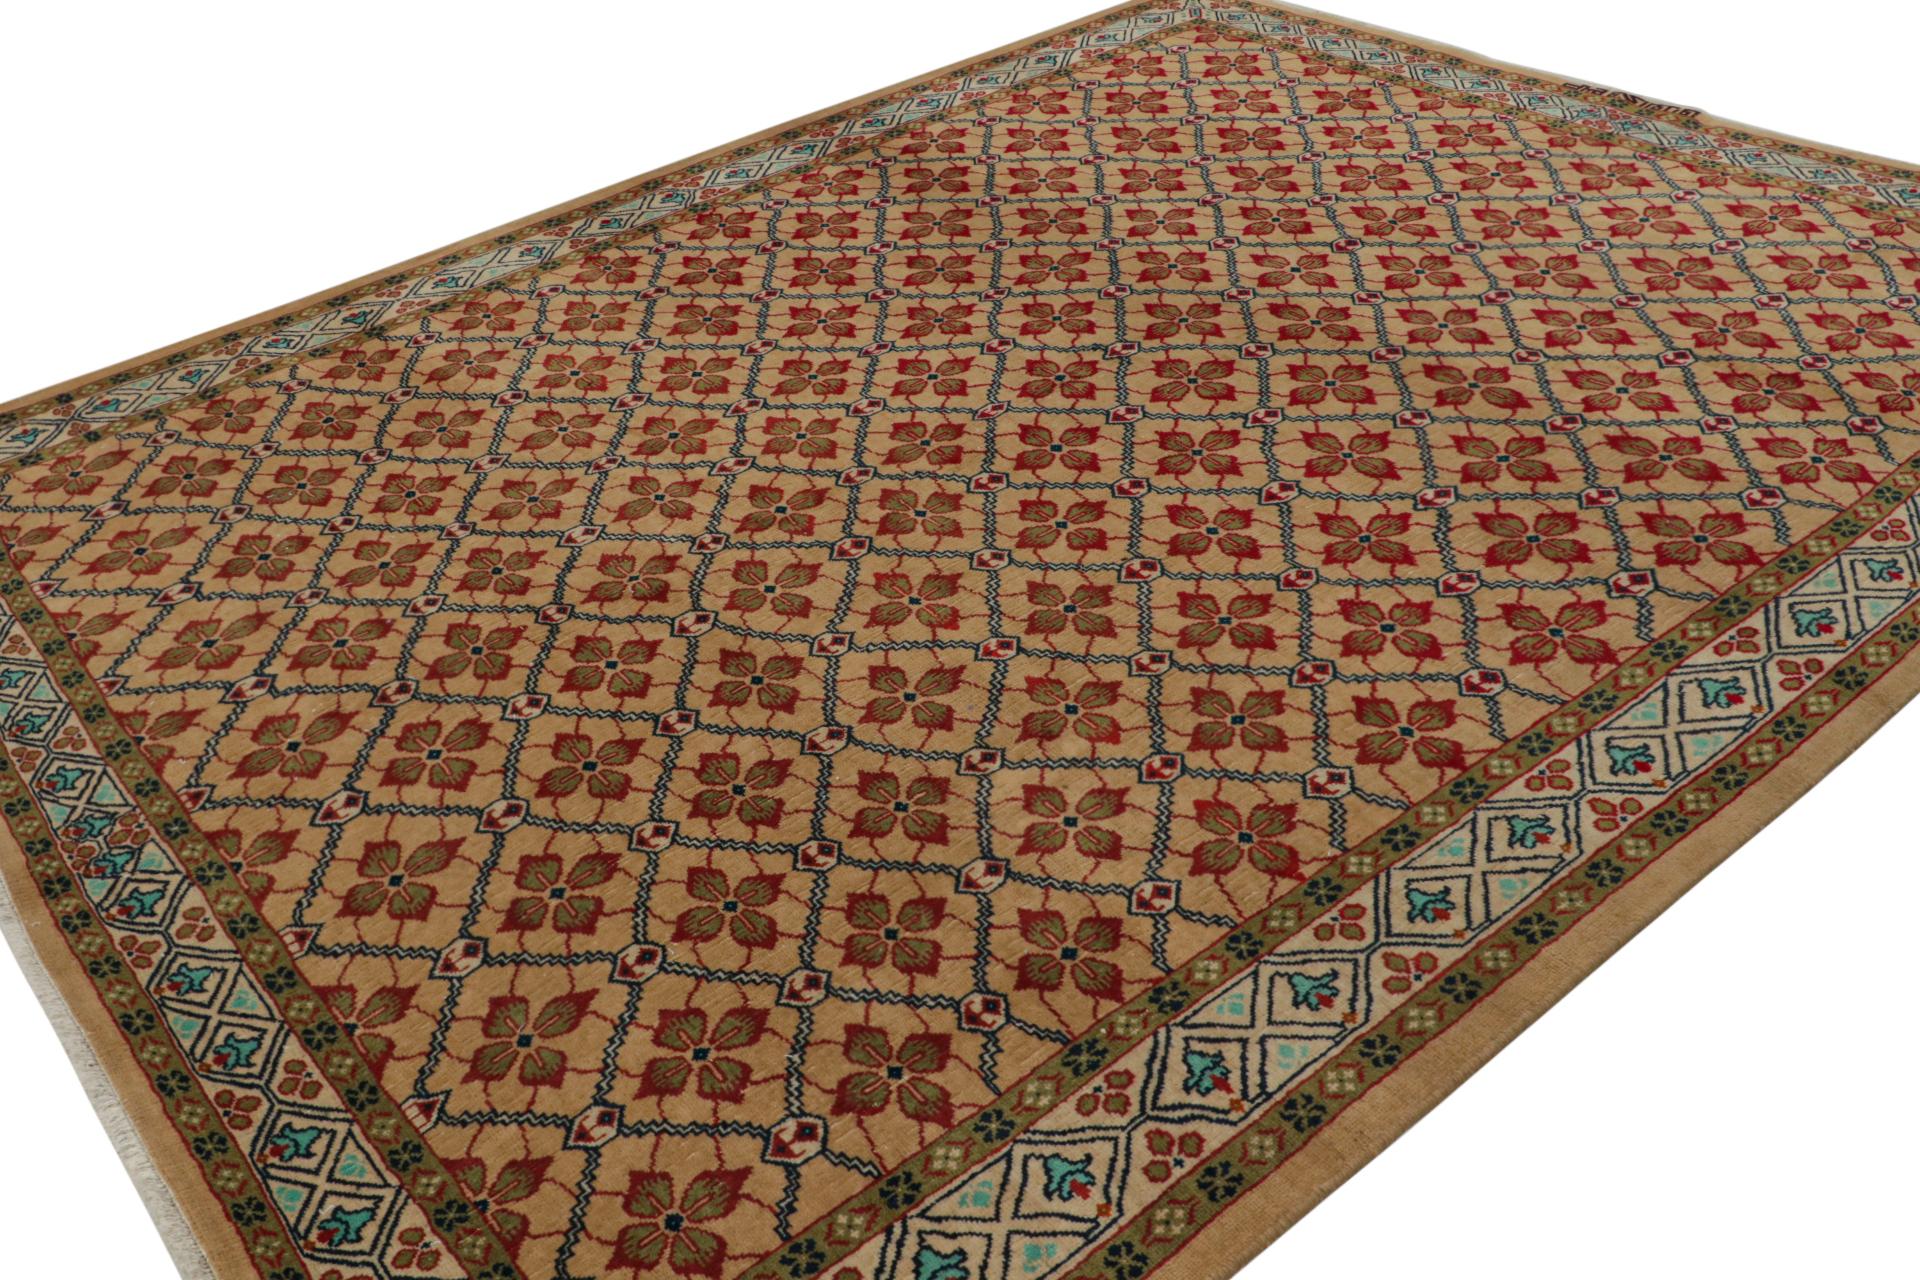 Dieser handgeknüpfte türkische Teppich im Format 9x11 aus Wolle (ca. 1970-1980) zeichnet sich durch ein Gittermuster mit geometrisch-floralen Mustern sowohl im Feld als auch in der Bordüre aus. 

Über das Design: 

Kenner werden dieses Design